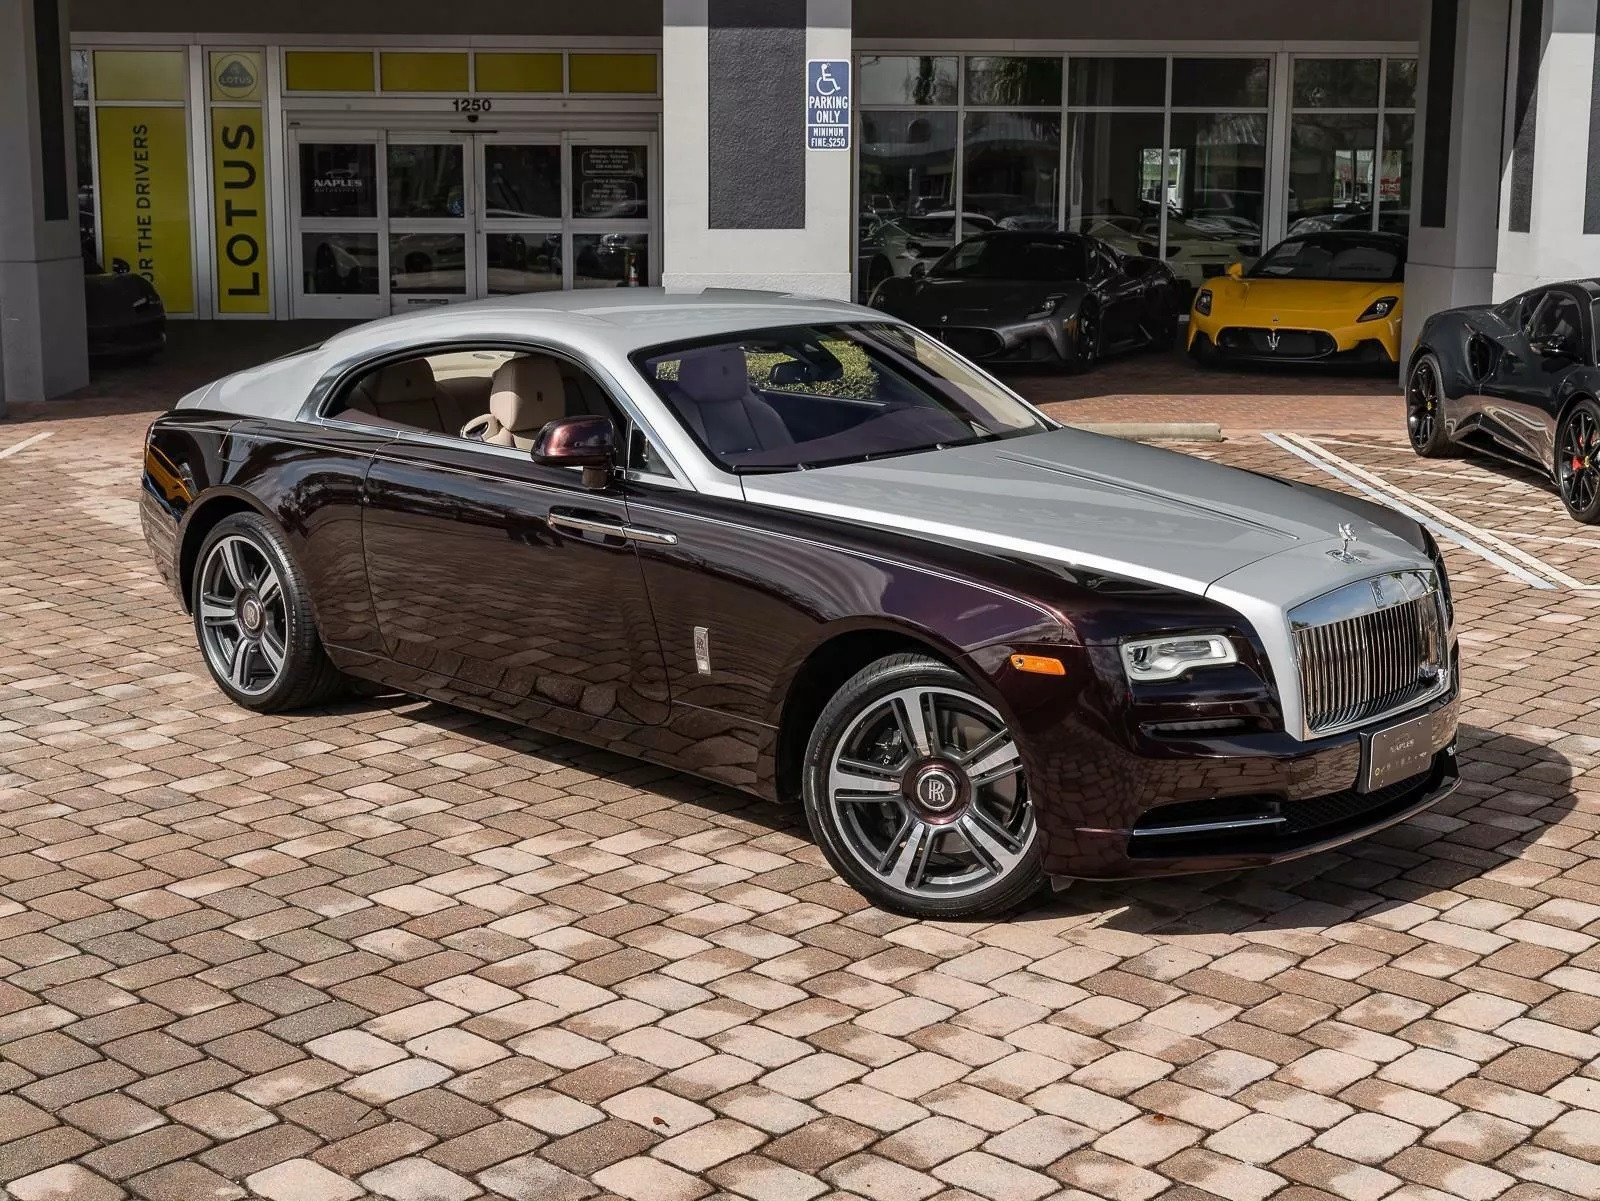 View - Mua siêu xe Bugatti Chiron 3,8 triệu USD, đại gia được tặng kèm Rolls-Royce